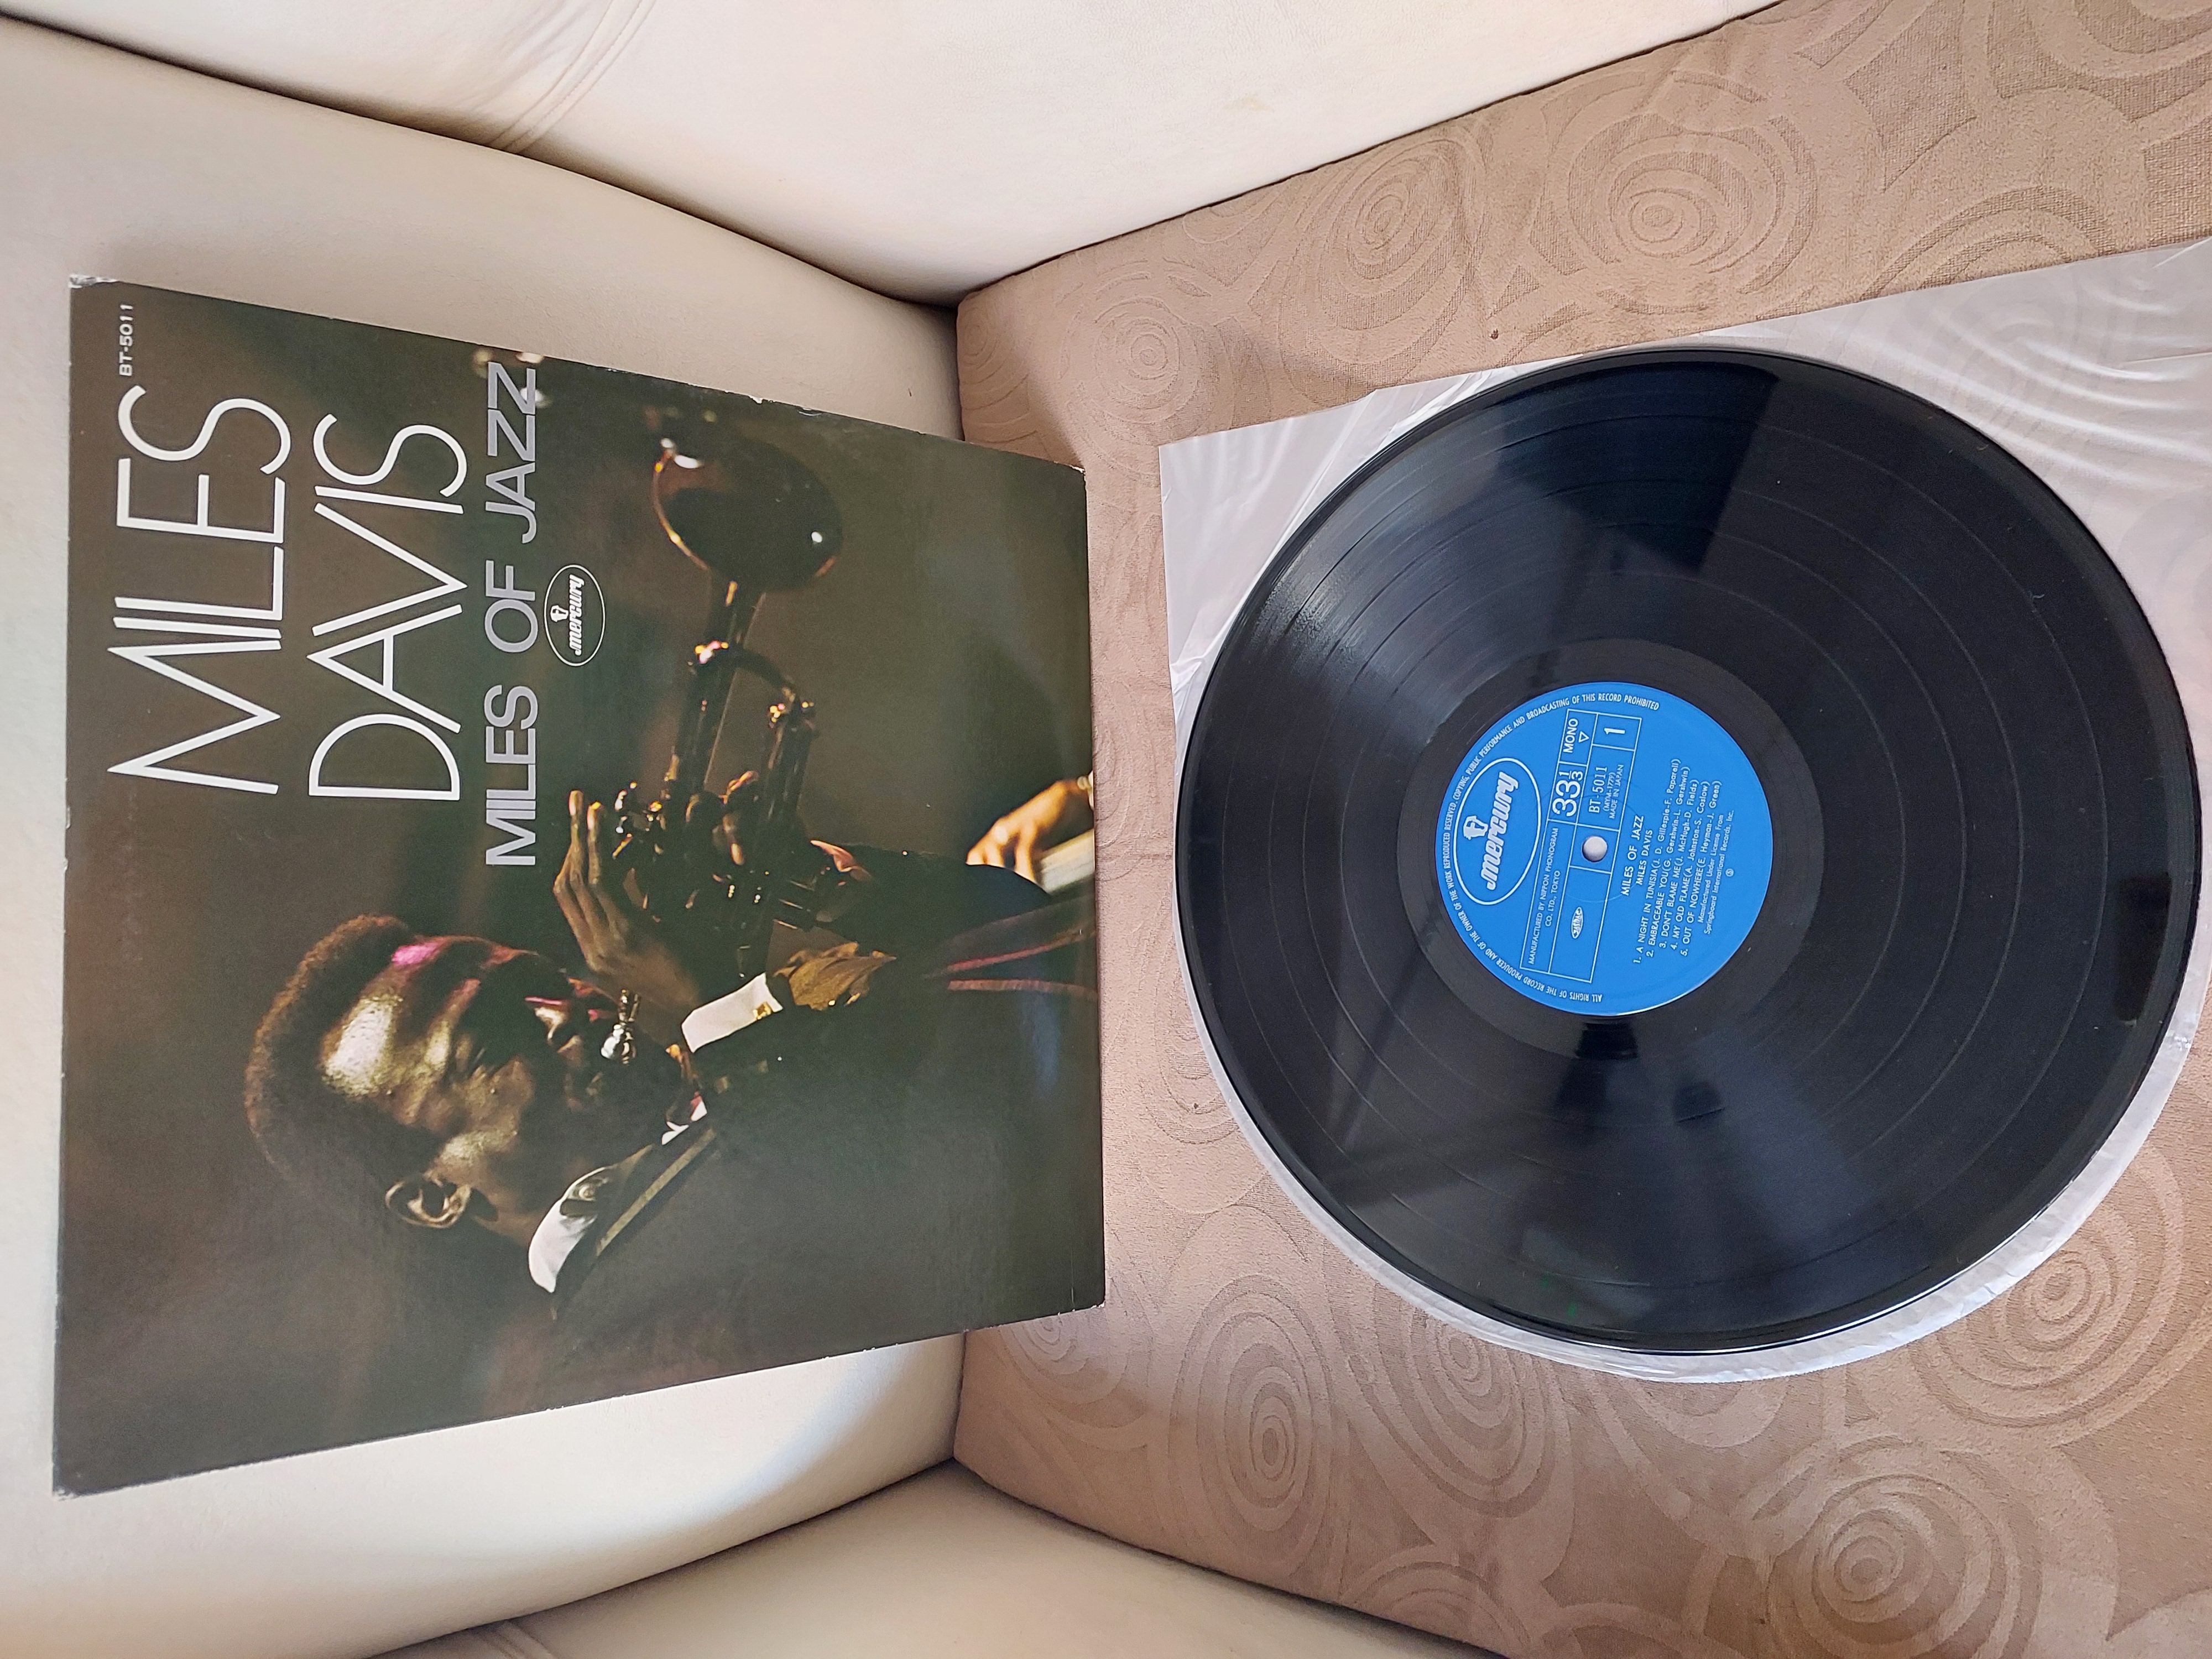 Miles Davis – Miles Of Jazz -1975 Japonya Basım Albüm -33 lük LP Plak Obisiz